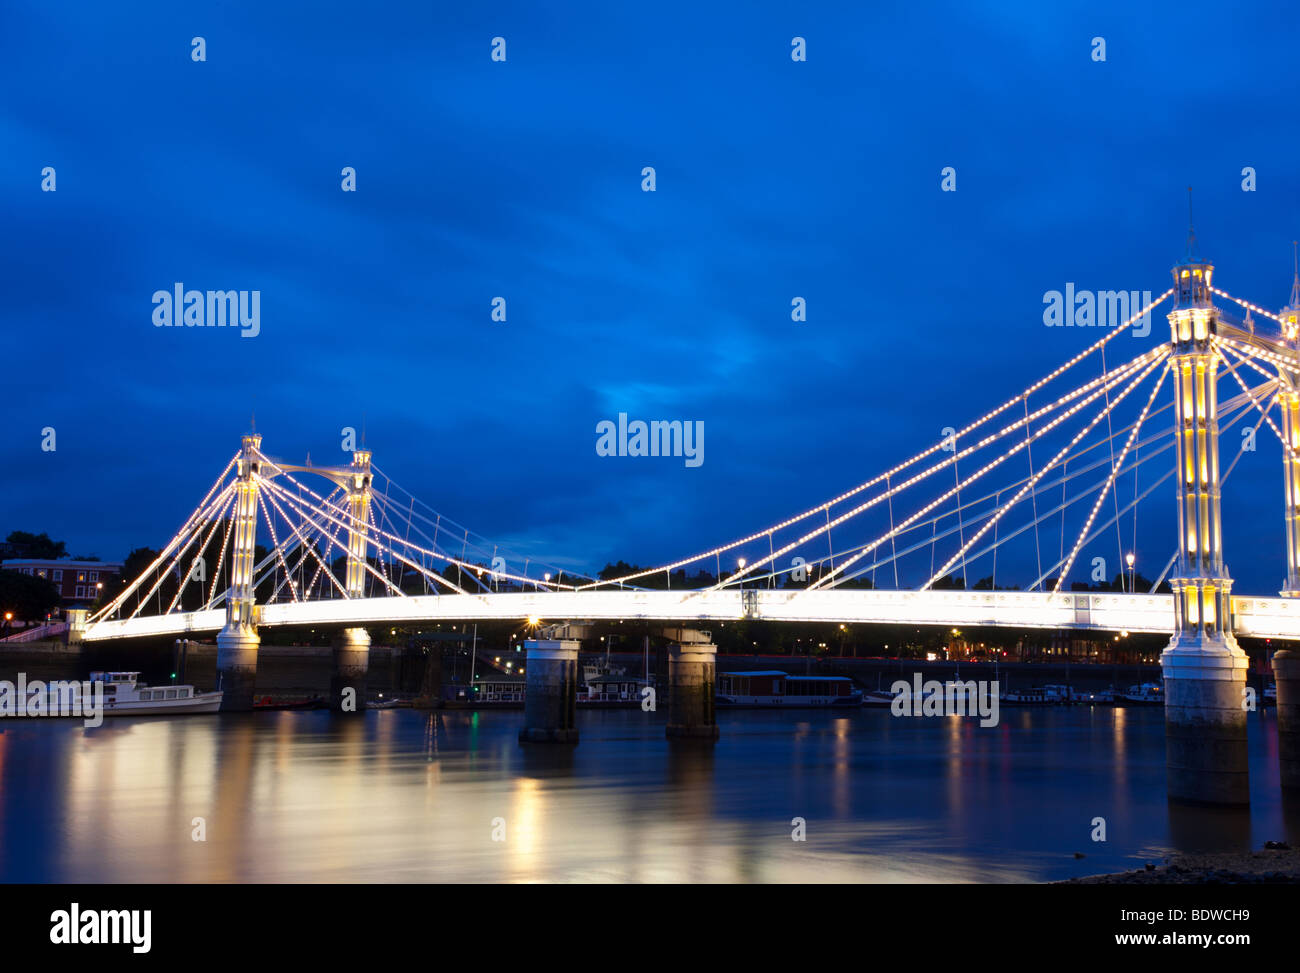 Night shot of the Albert Bridge, London Stock Photo